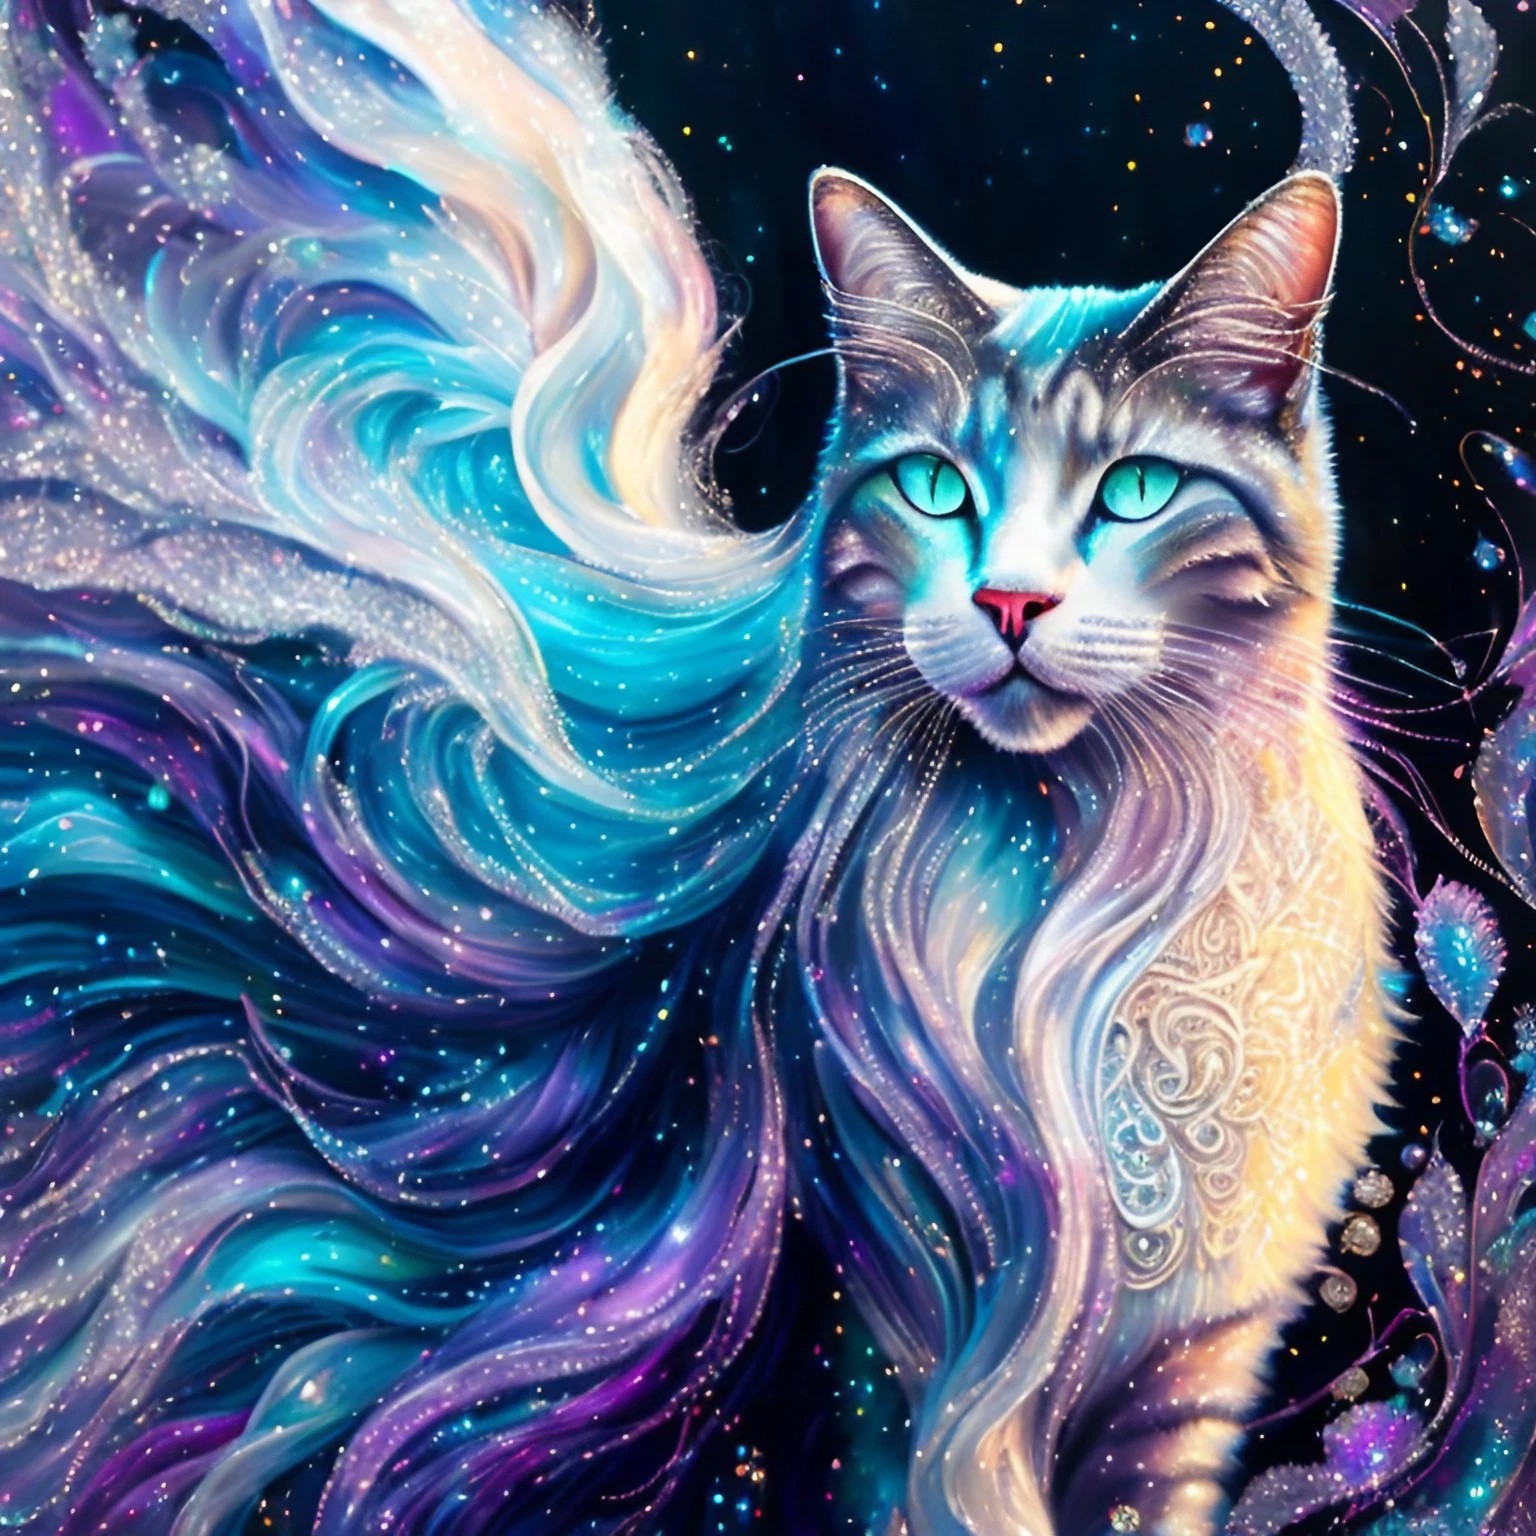 暗闇の中美しく輝く虹色の猫＆神秘的な雰囲気の幻想的な生き物のリアルイラスト画像素材